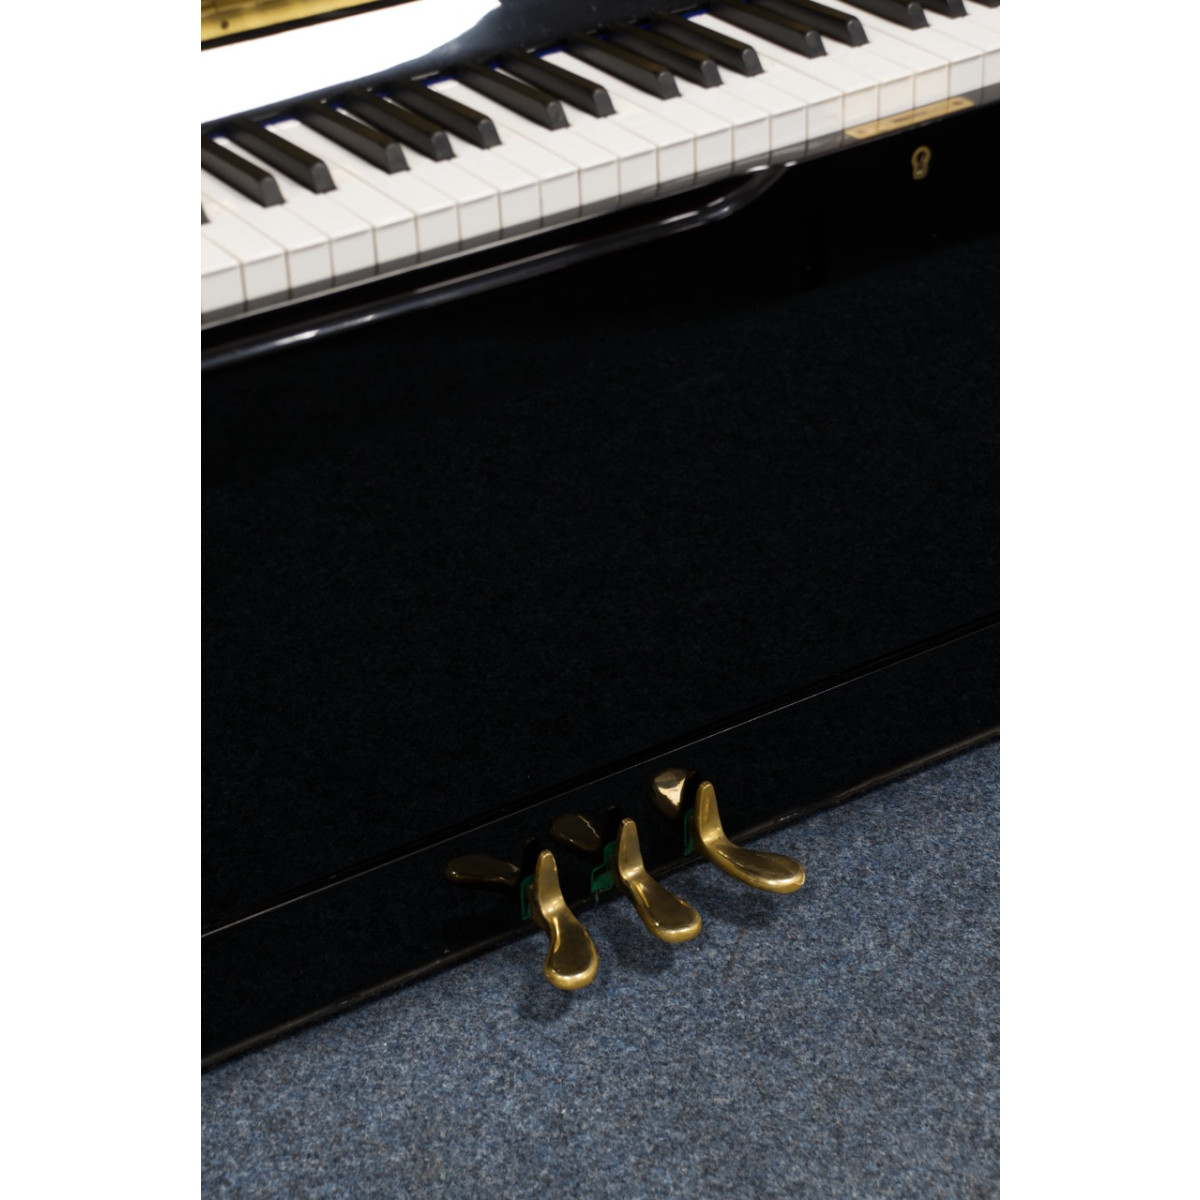 Royale Classic Klavier, Modell 49FRA, schwarz, gebraucht kaufen bei Pianelli, Ansicht: Pedale